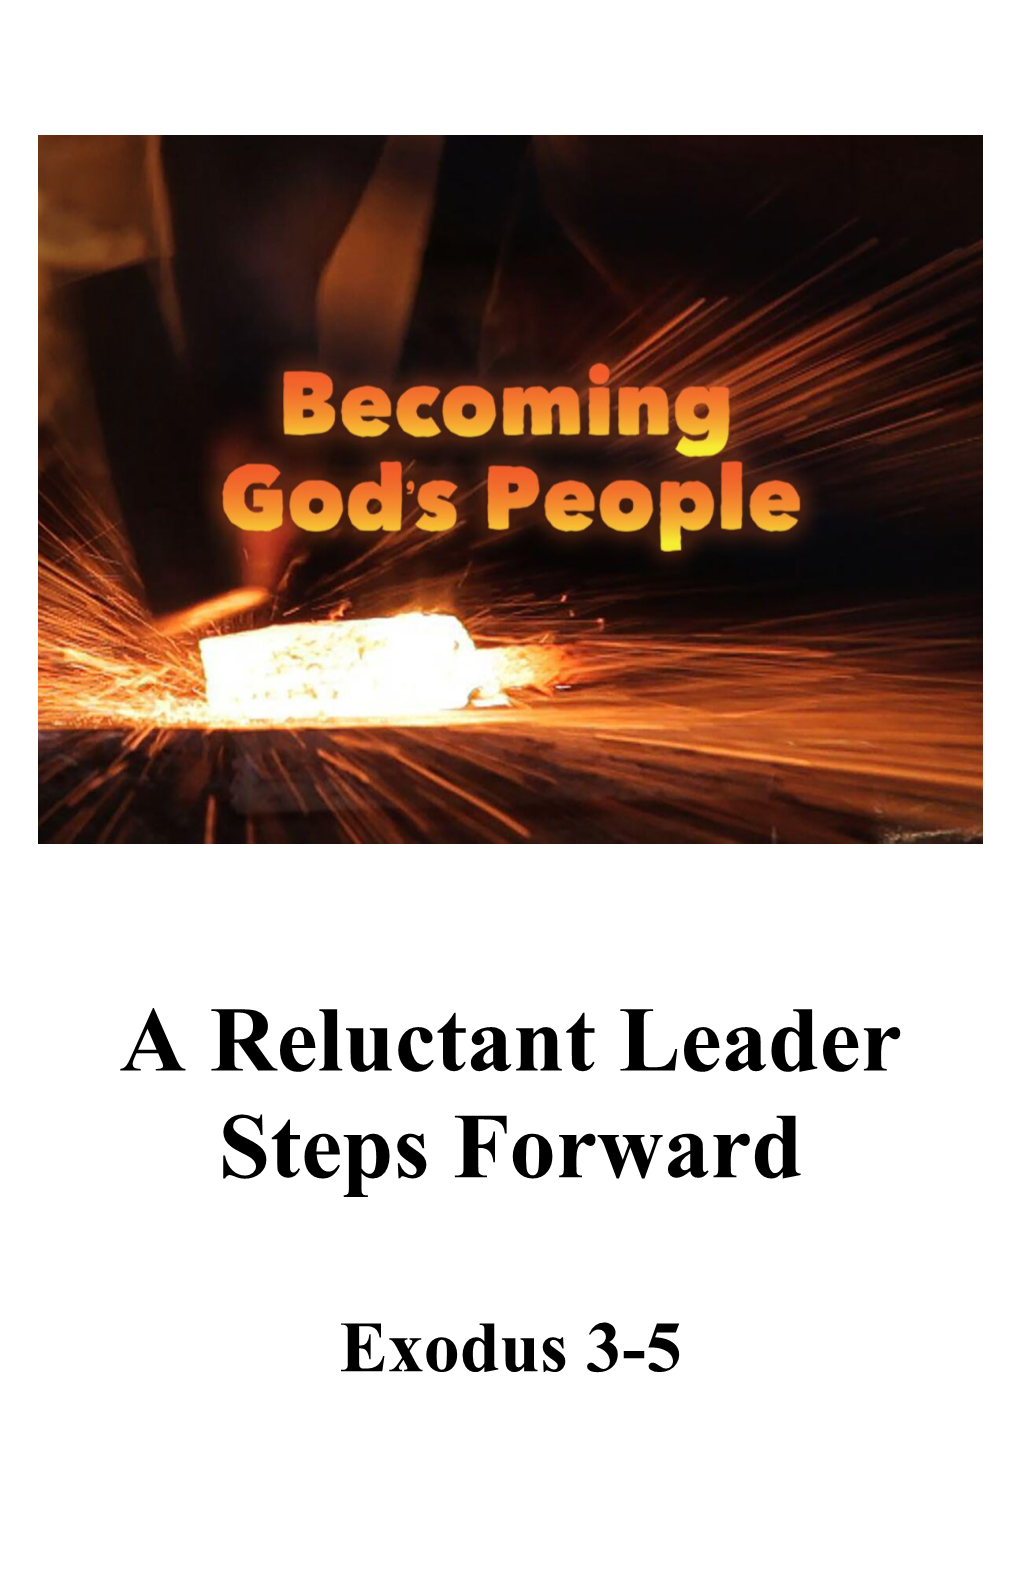 A Reluctant Leader Steps Forward